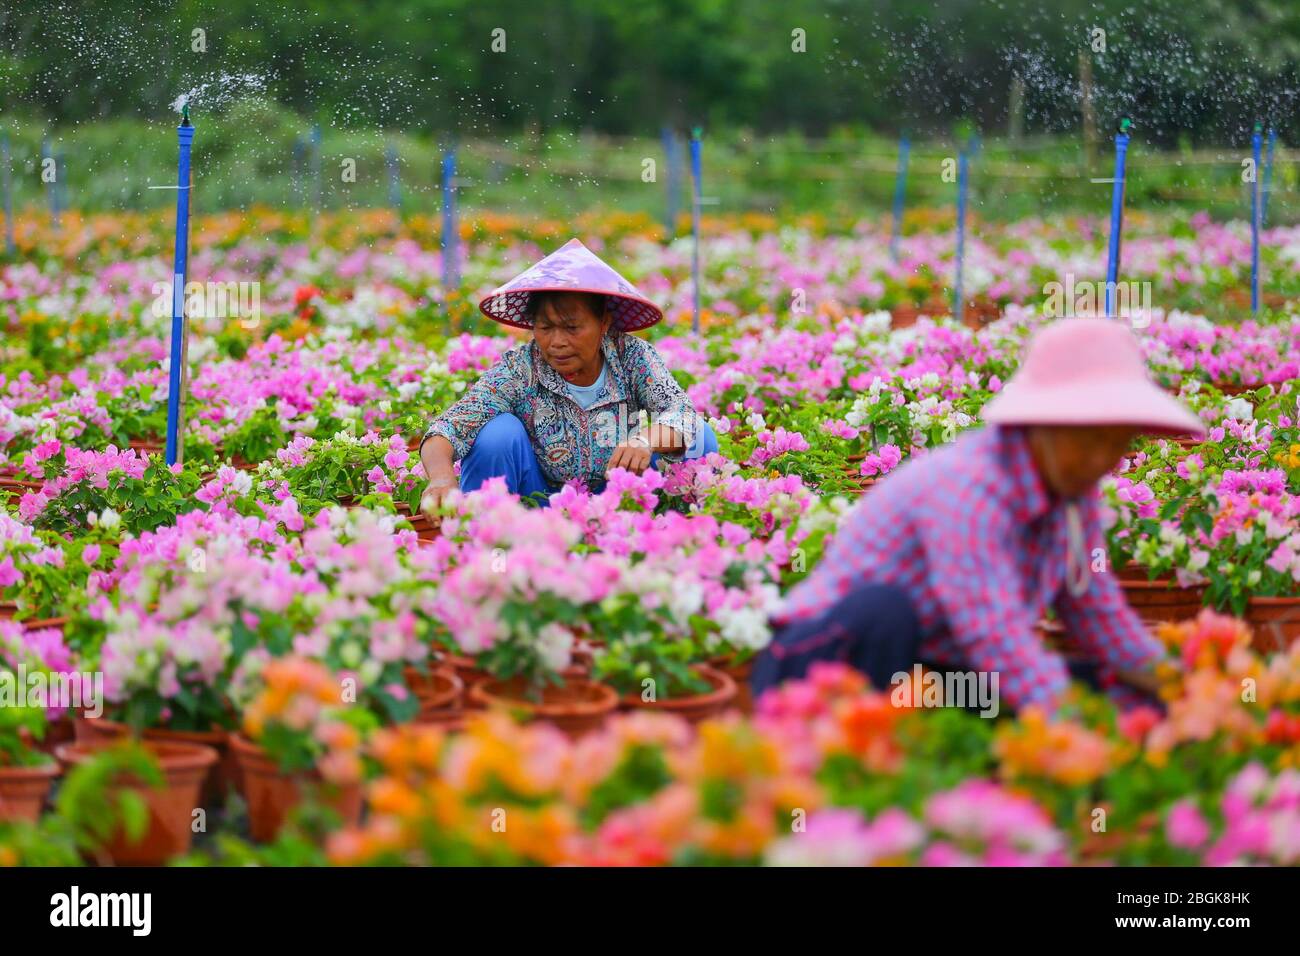 Les agriculteurs cultivent des bougainvillea dans une base de croissance de bougainvillea dans le village de Shentian dans le comté de Ding'an, dans la province de Hainan en Chine méridionale, le 11 mars 2020. 97 h Banque D'Images